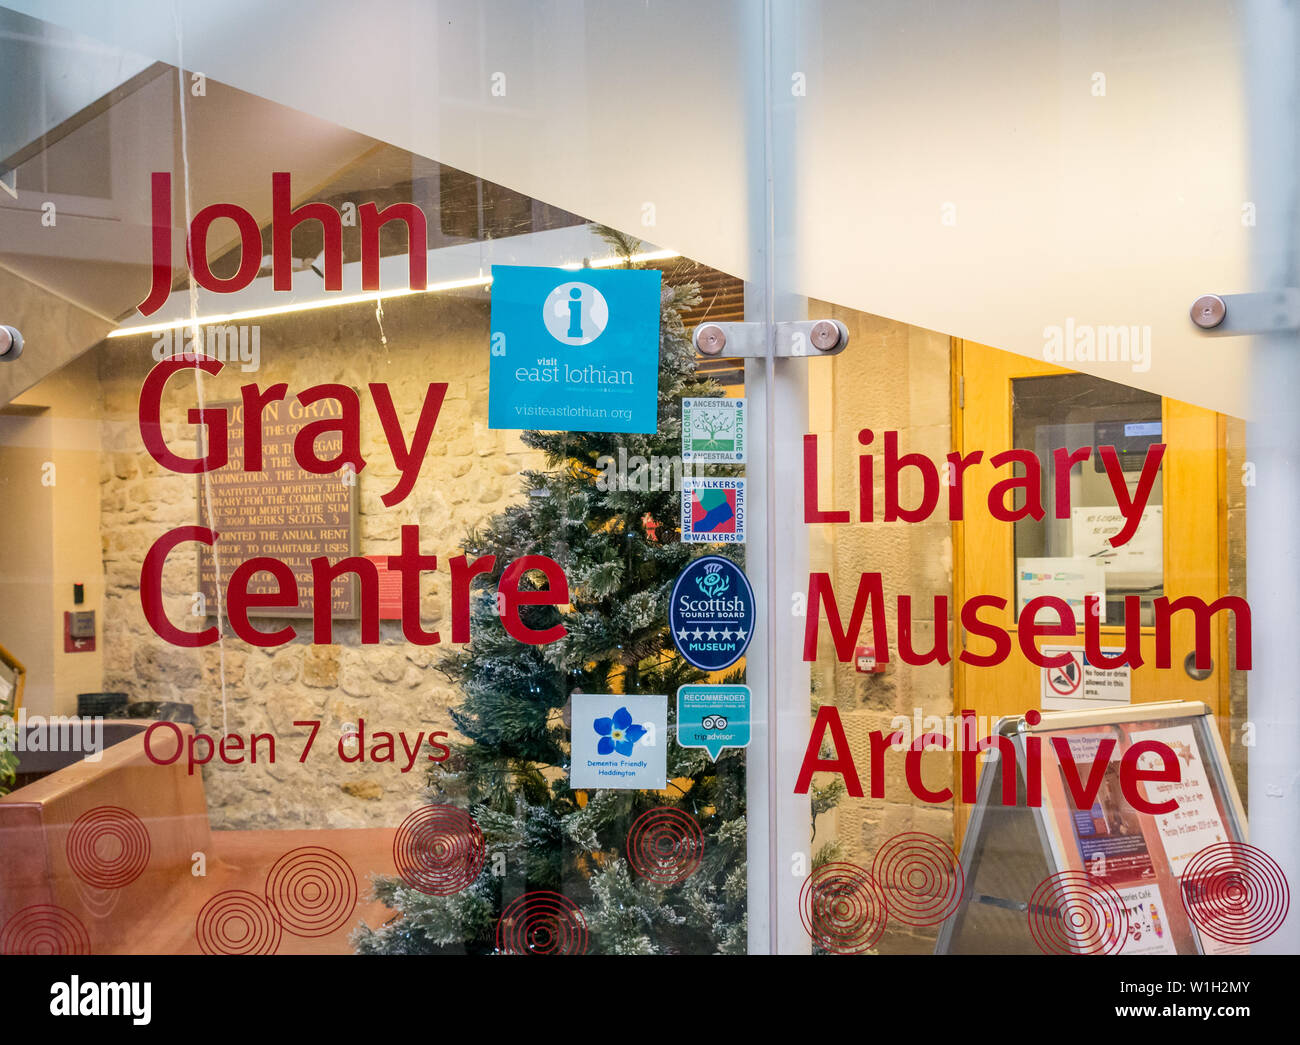 John Gray entrée centrale, Haddington, musée et bibliothèque, archives Haddington, East Lothian, Scotland, UK Banque D'Images